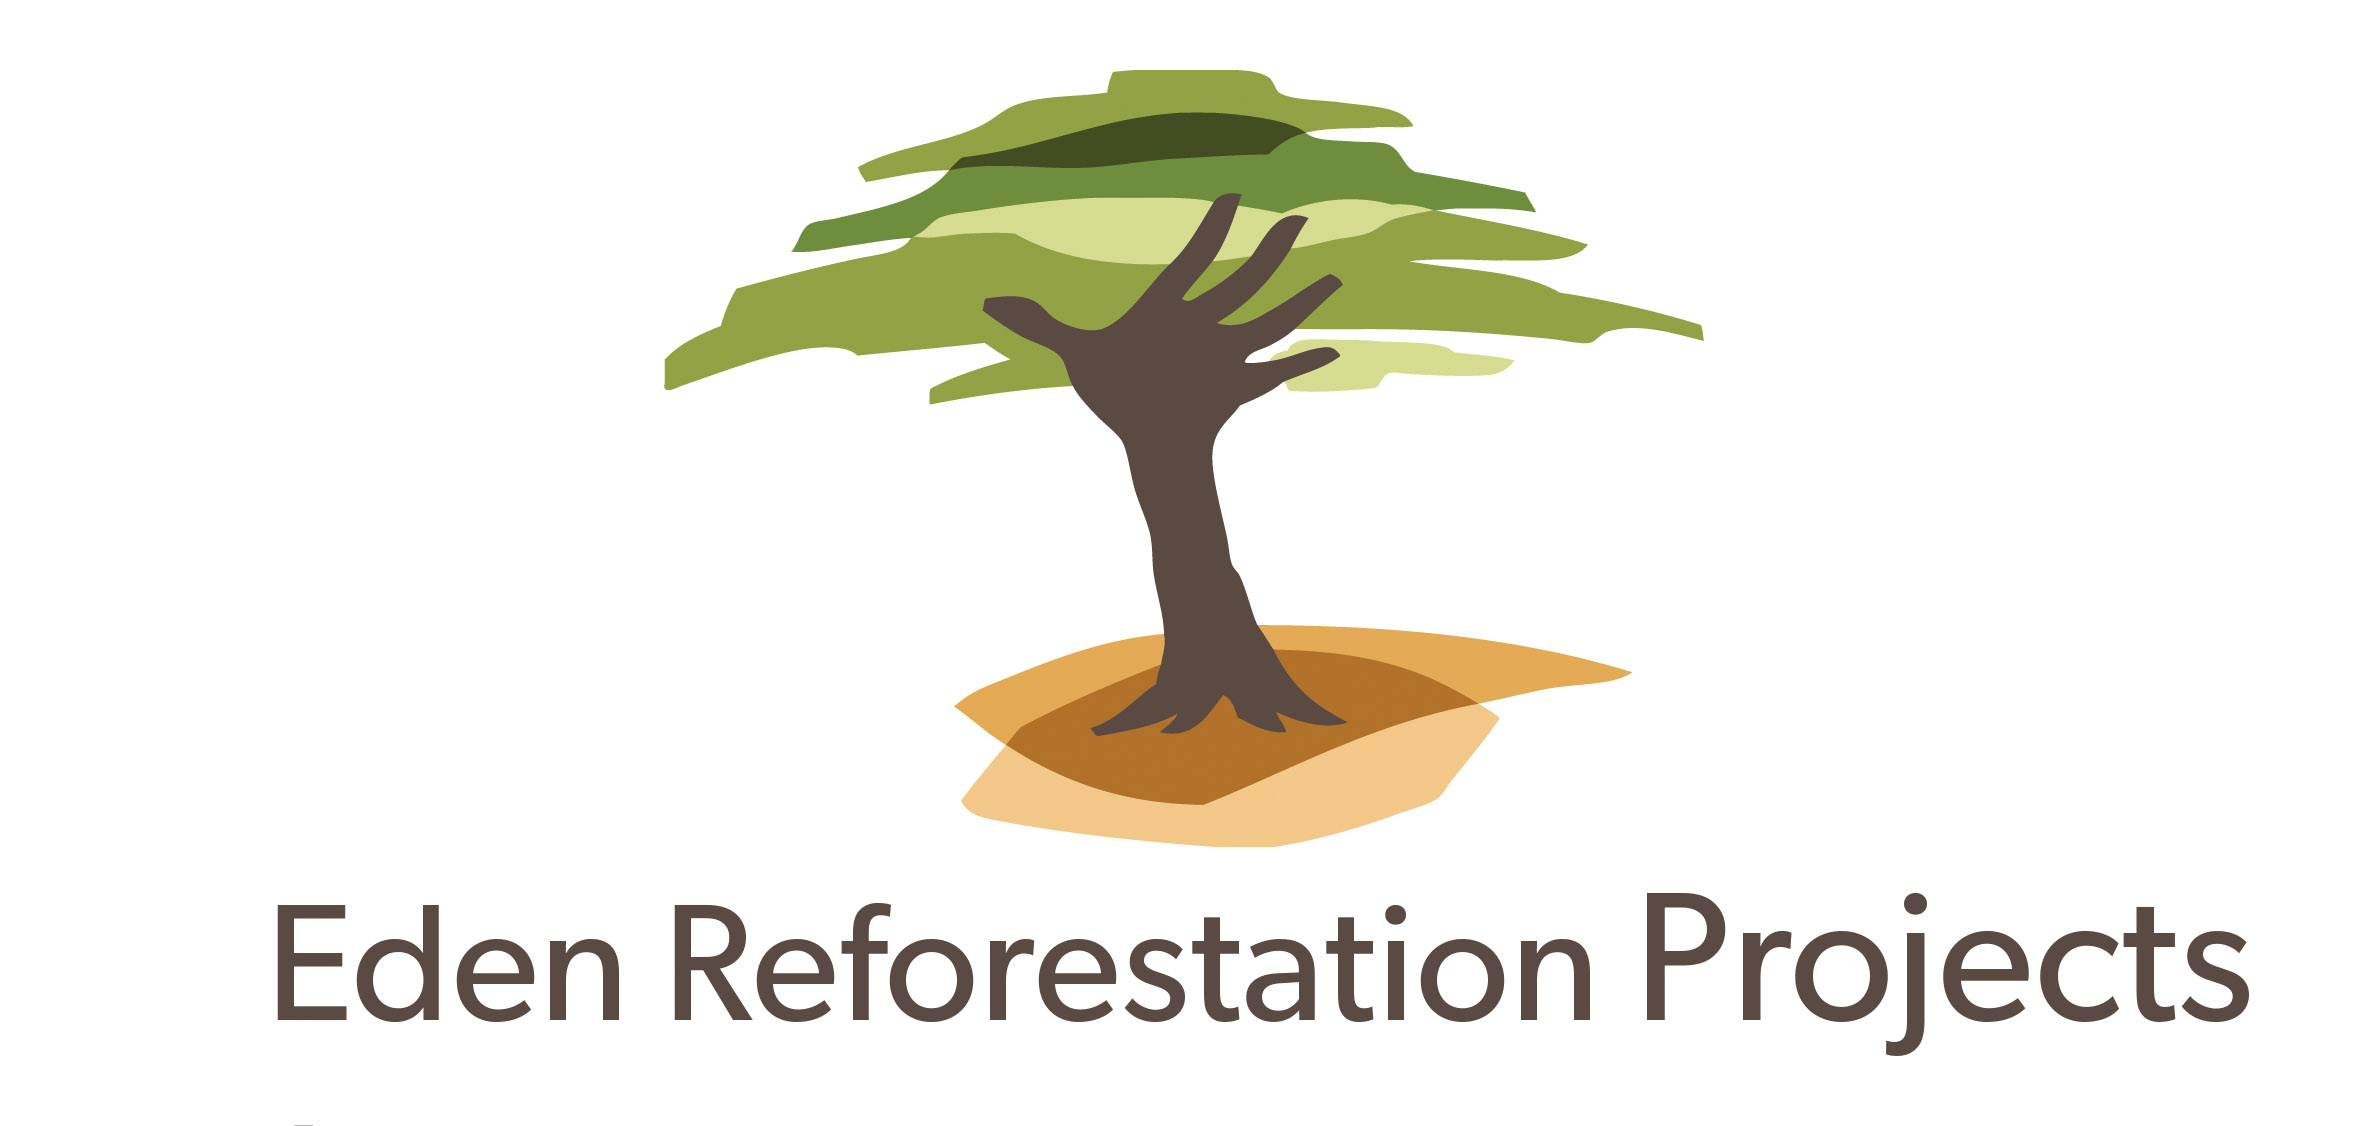 Eden Reforestation Project